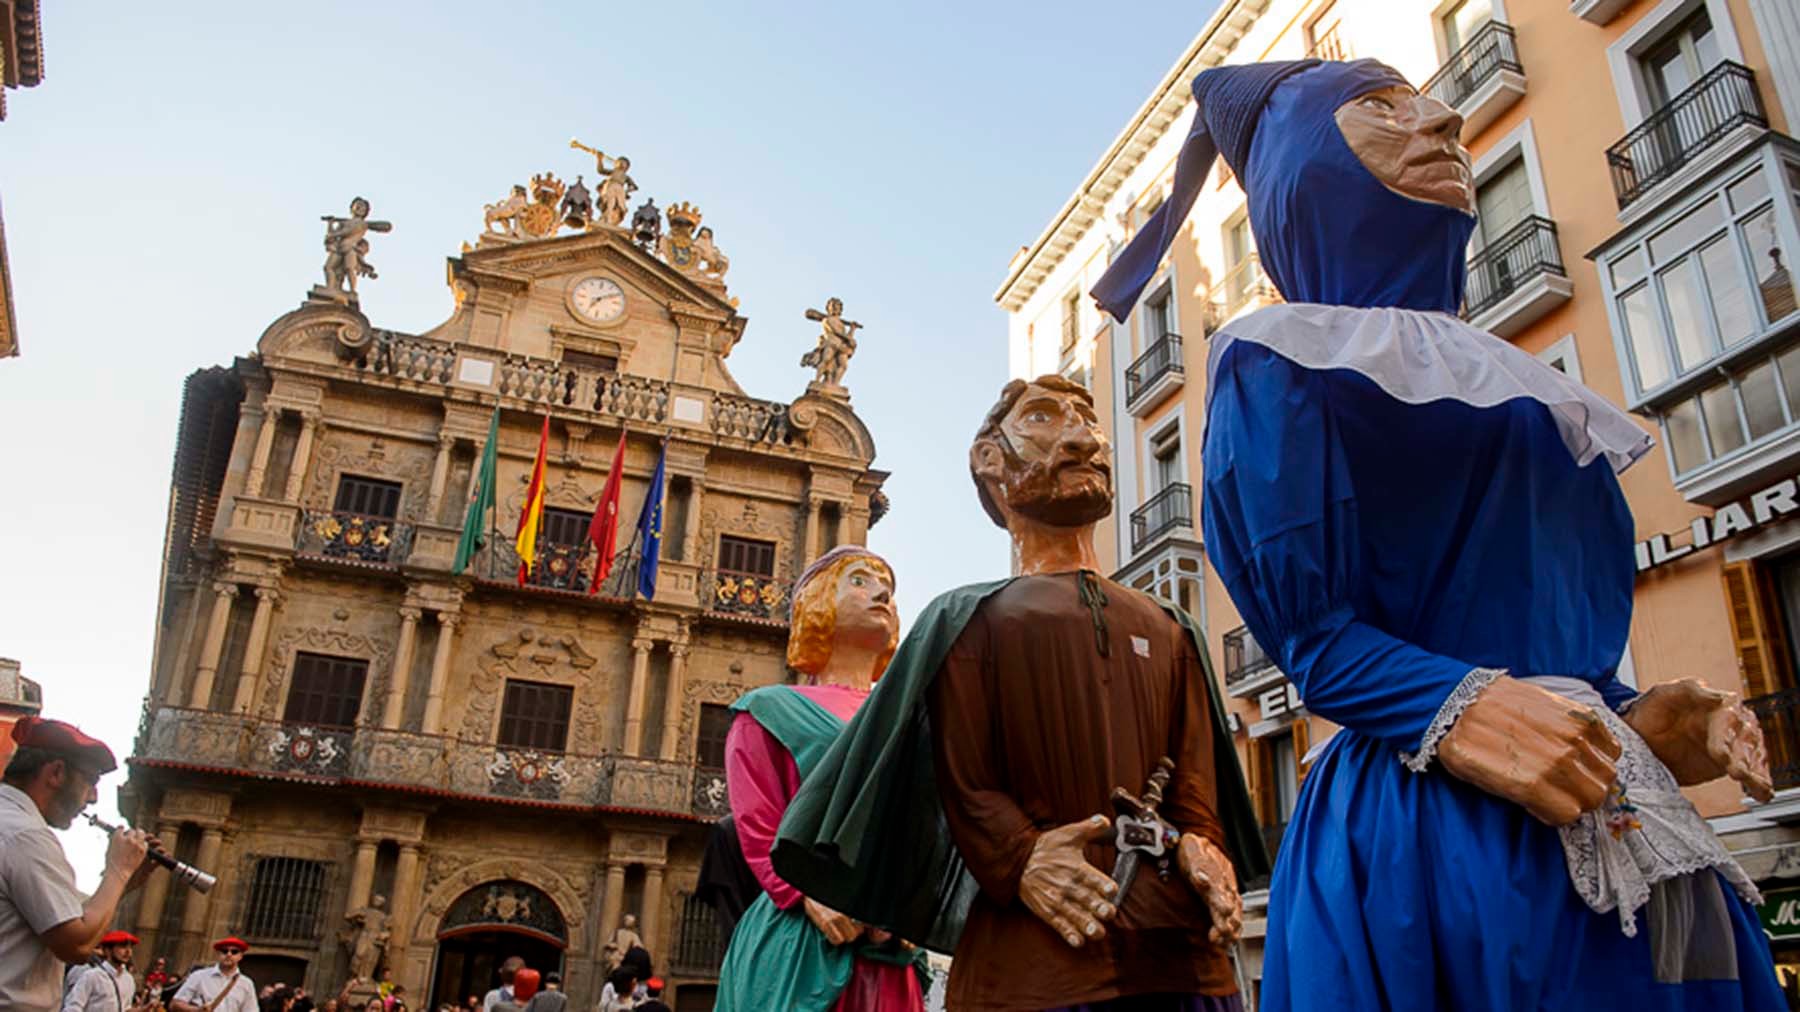 El barrio de Pamplona que celebra sus fiestas con calderetes, gigantes y concursos